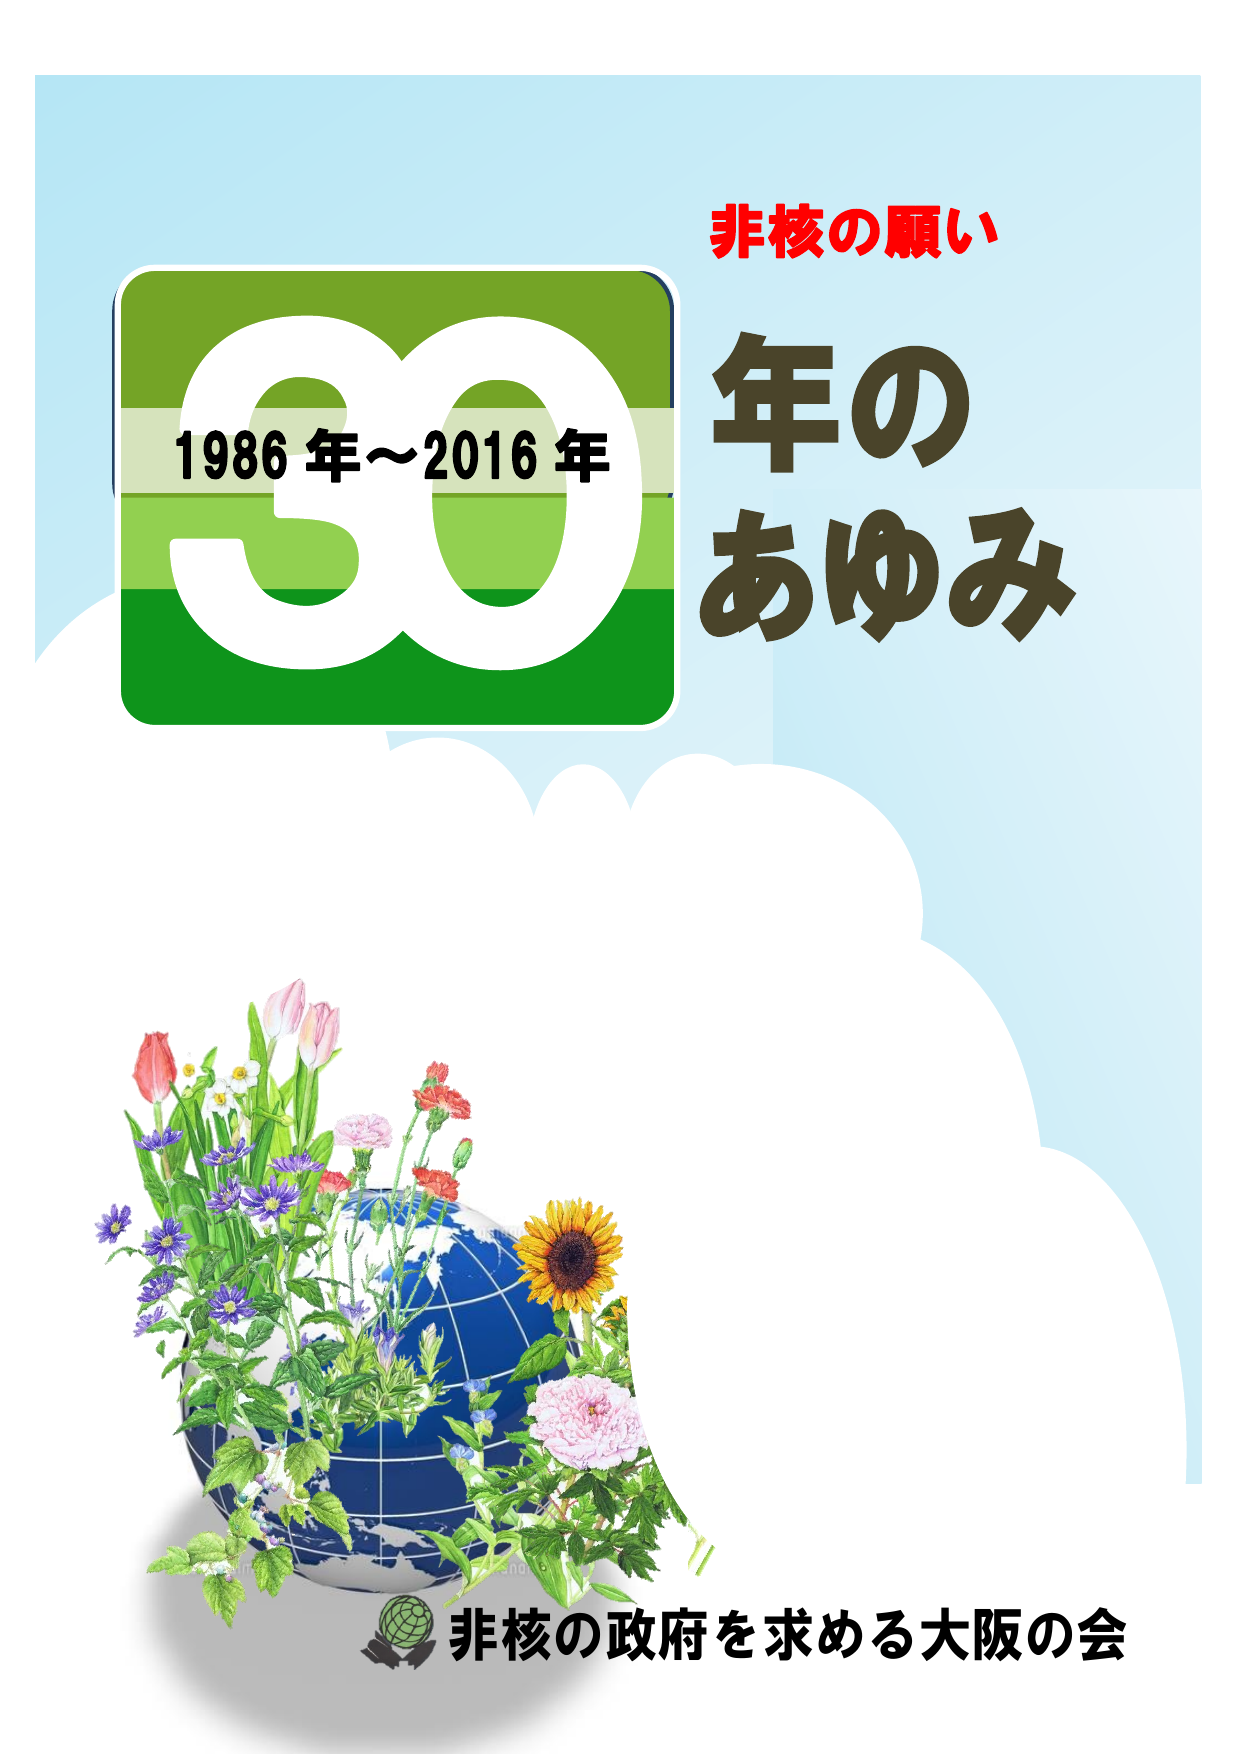 非核の政府を求める大阪の会 1986 年 16 年 非核の願い